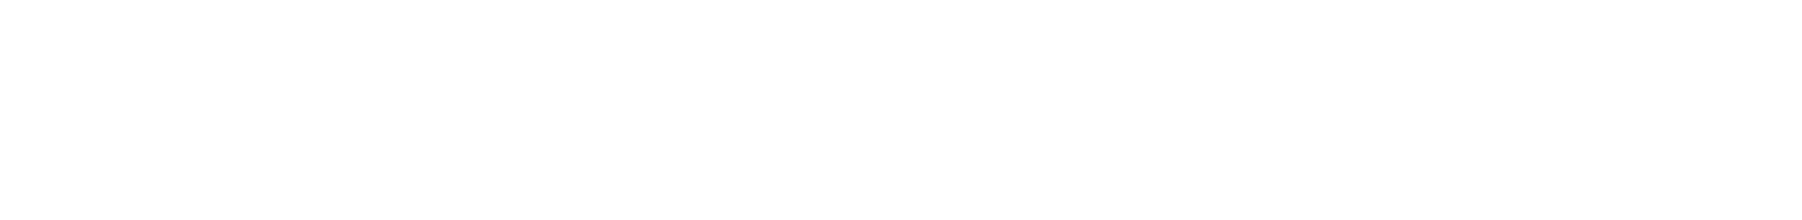 Artisan Partners logo in all-white